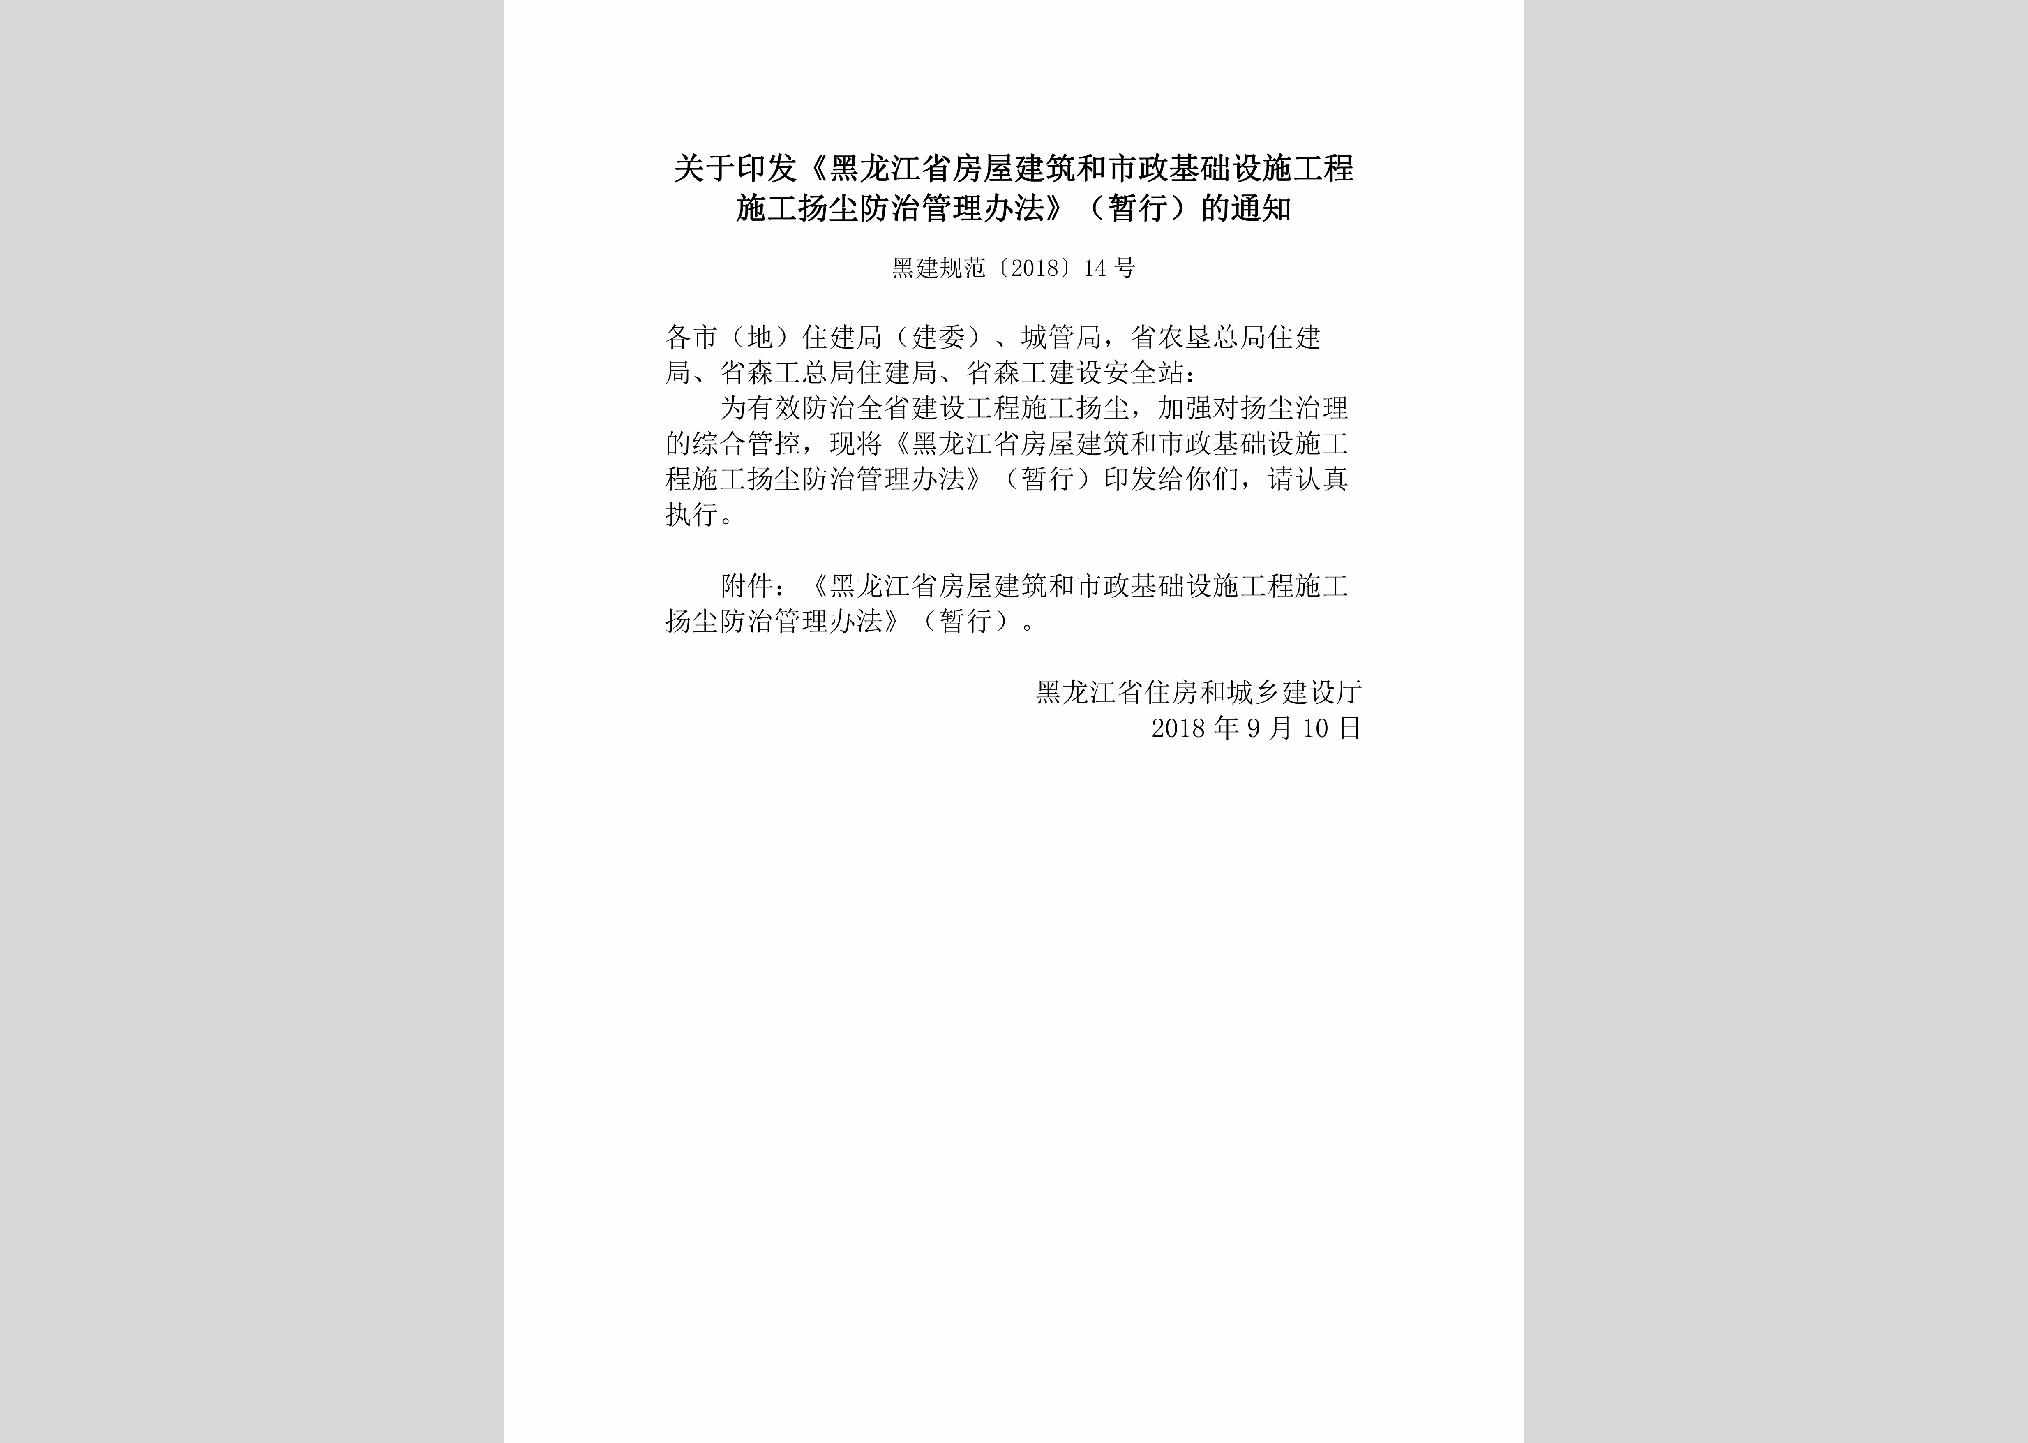 黑建规范[2018]14号：关于印发《黑龙江省房屋建筑和市政基础设施工程施工扬尘防治管理办法》（暂行）的通知